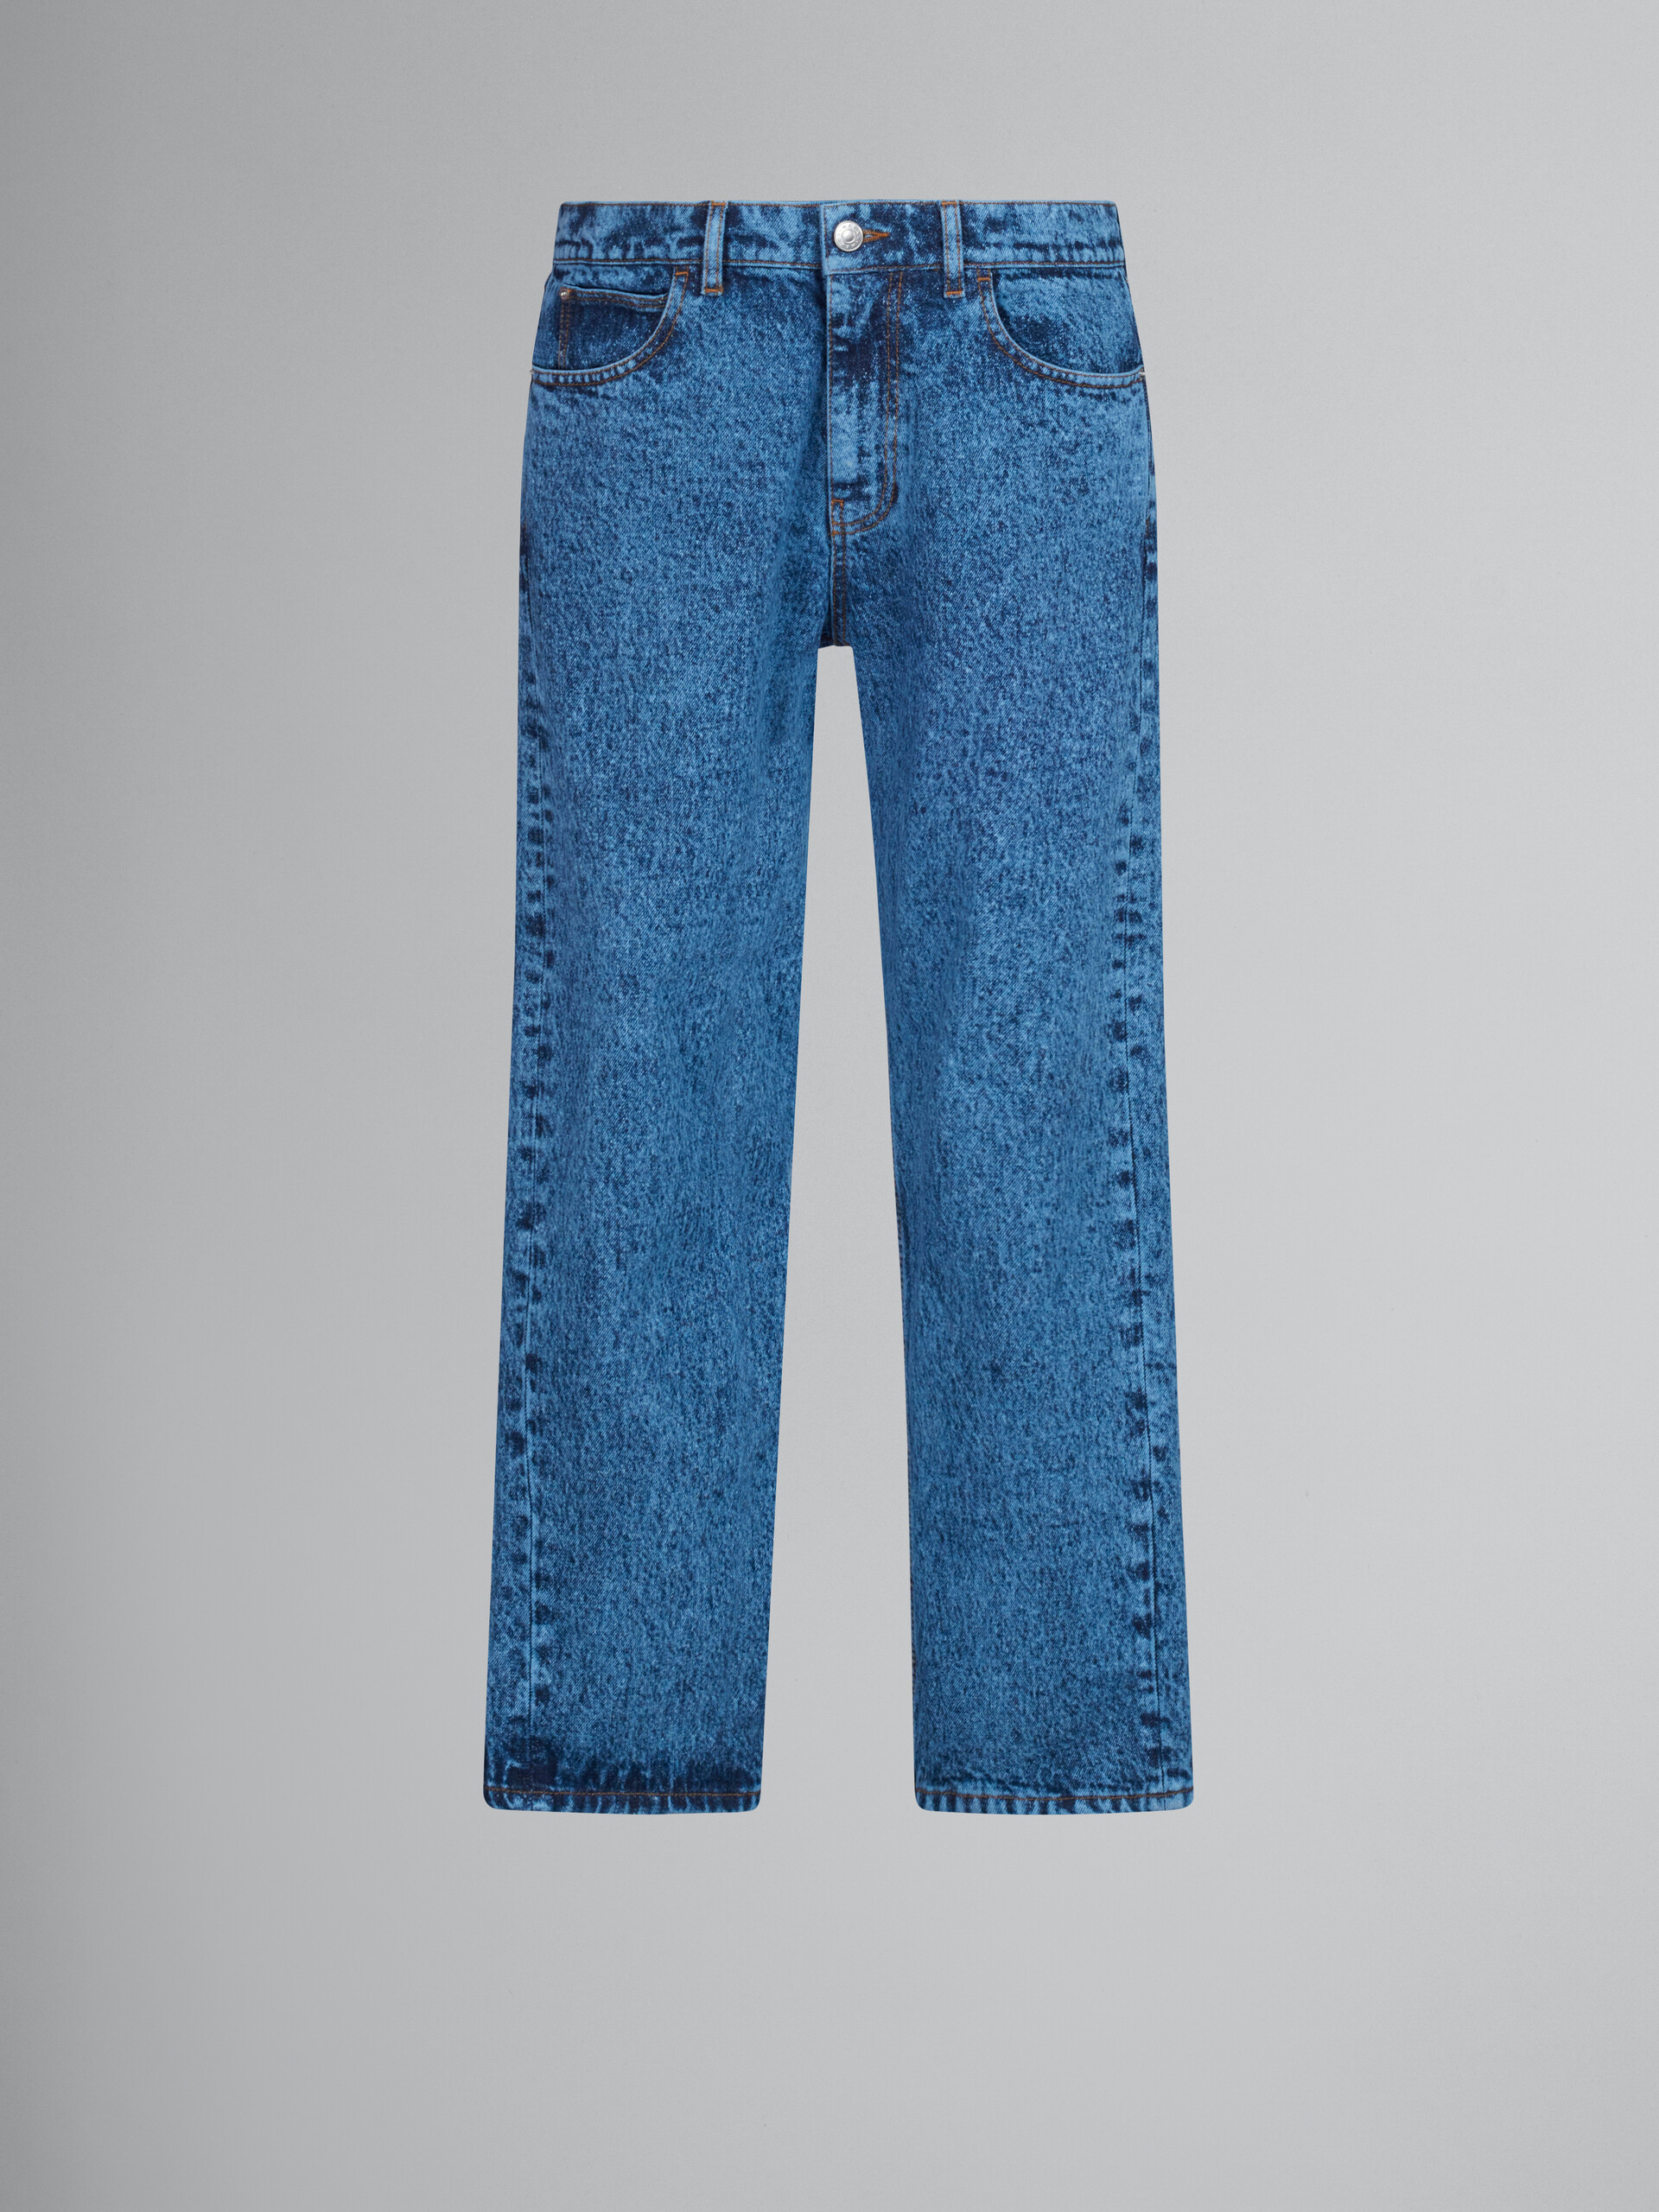 Blaue, gerade geschnittene Hose aus Baumwolldrillich mit marmoriertem Muster - Hosen - Image 1